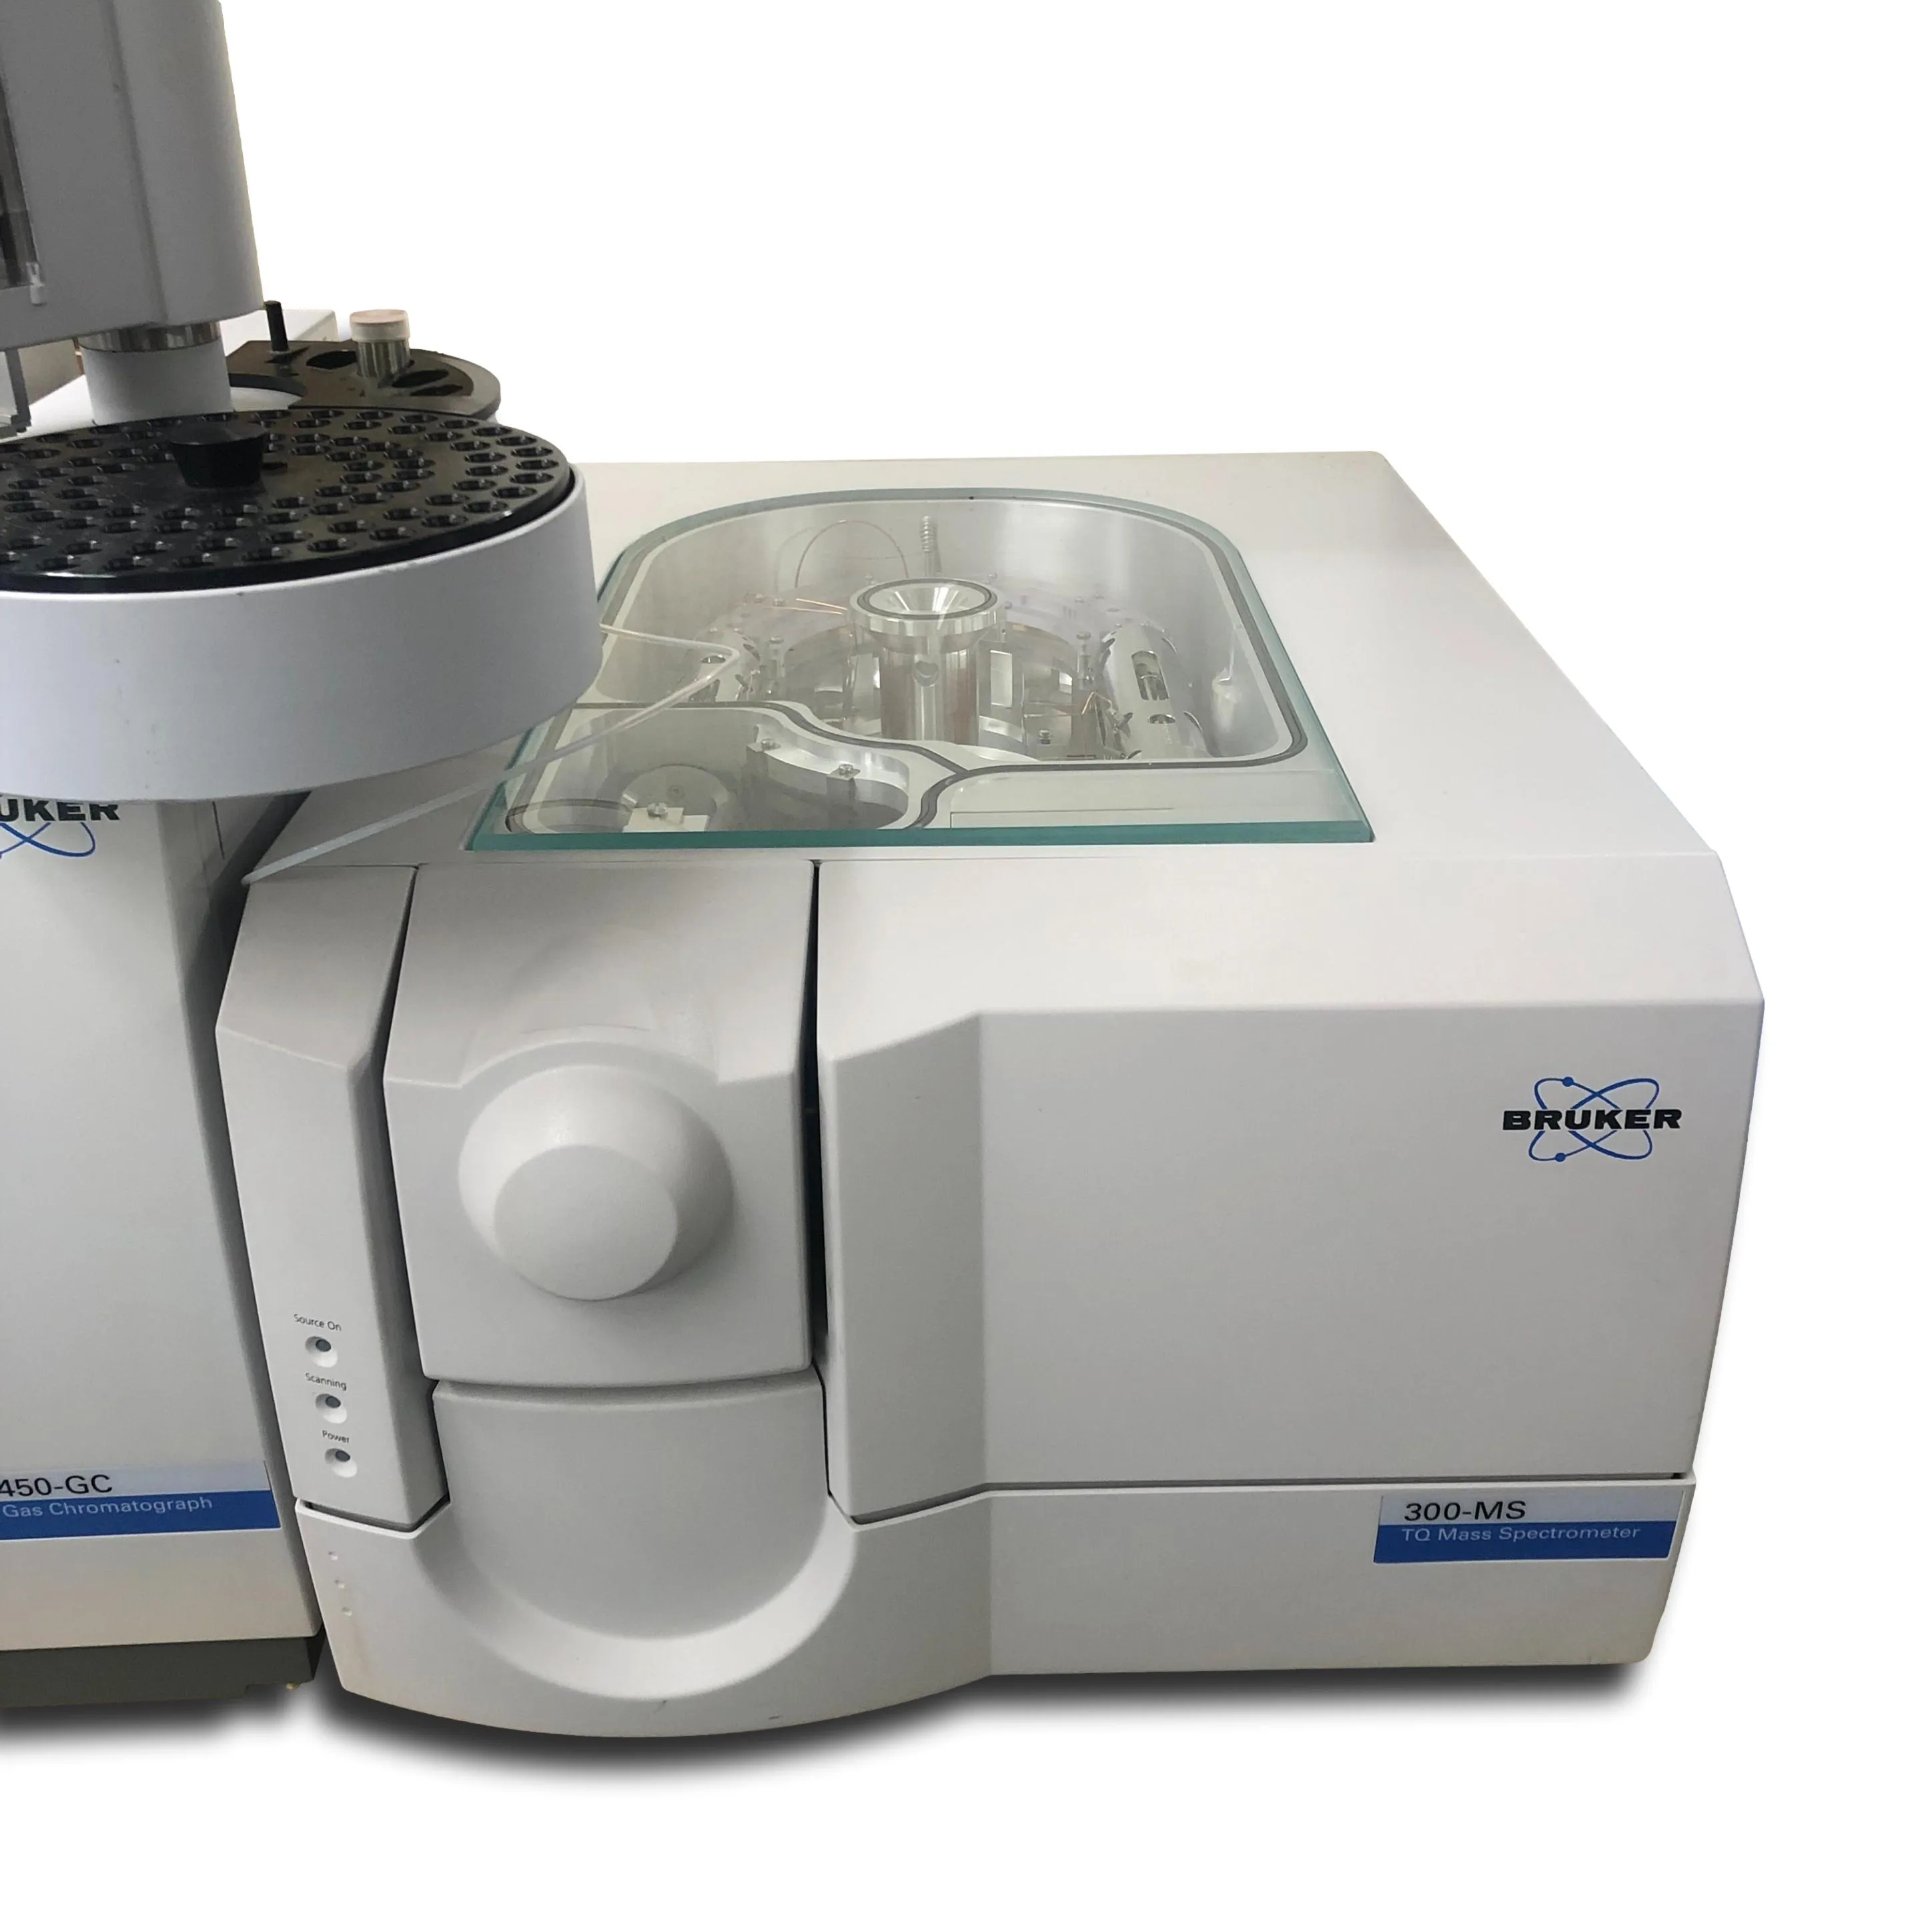 Bruker Varian GC/MS 450/300 300-MS Mass Spectrometer Spectrometry System